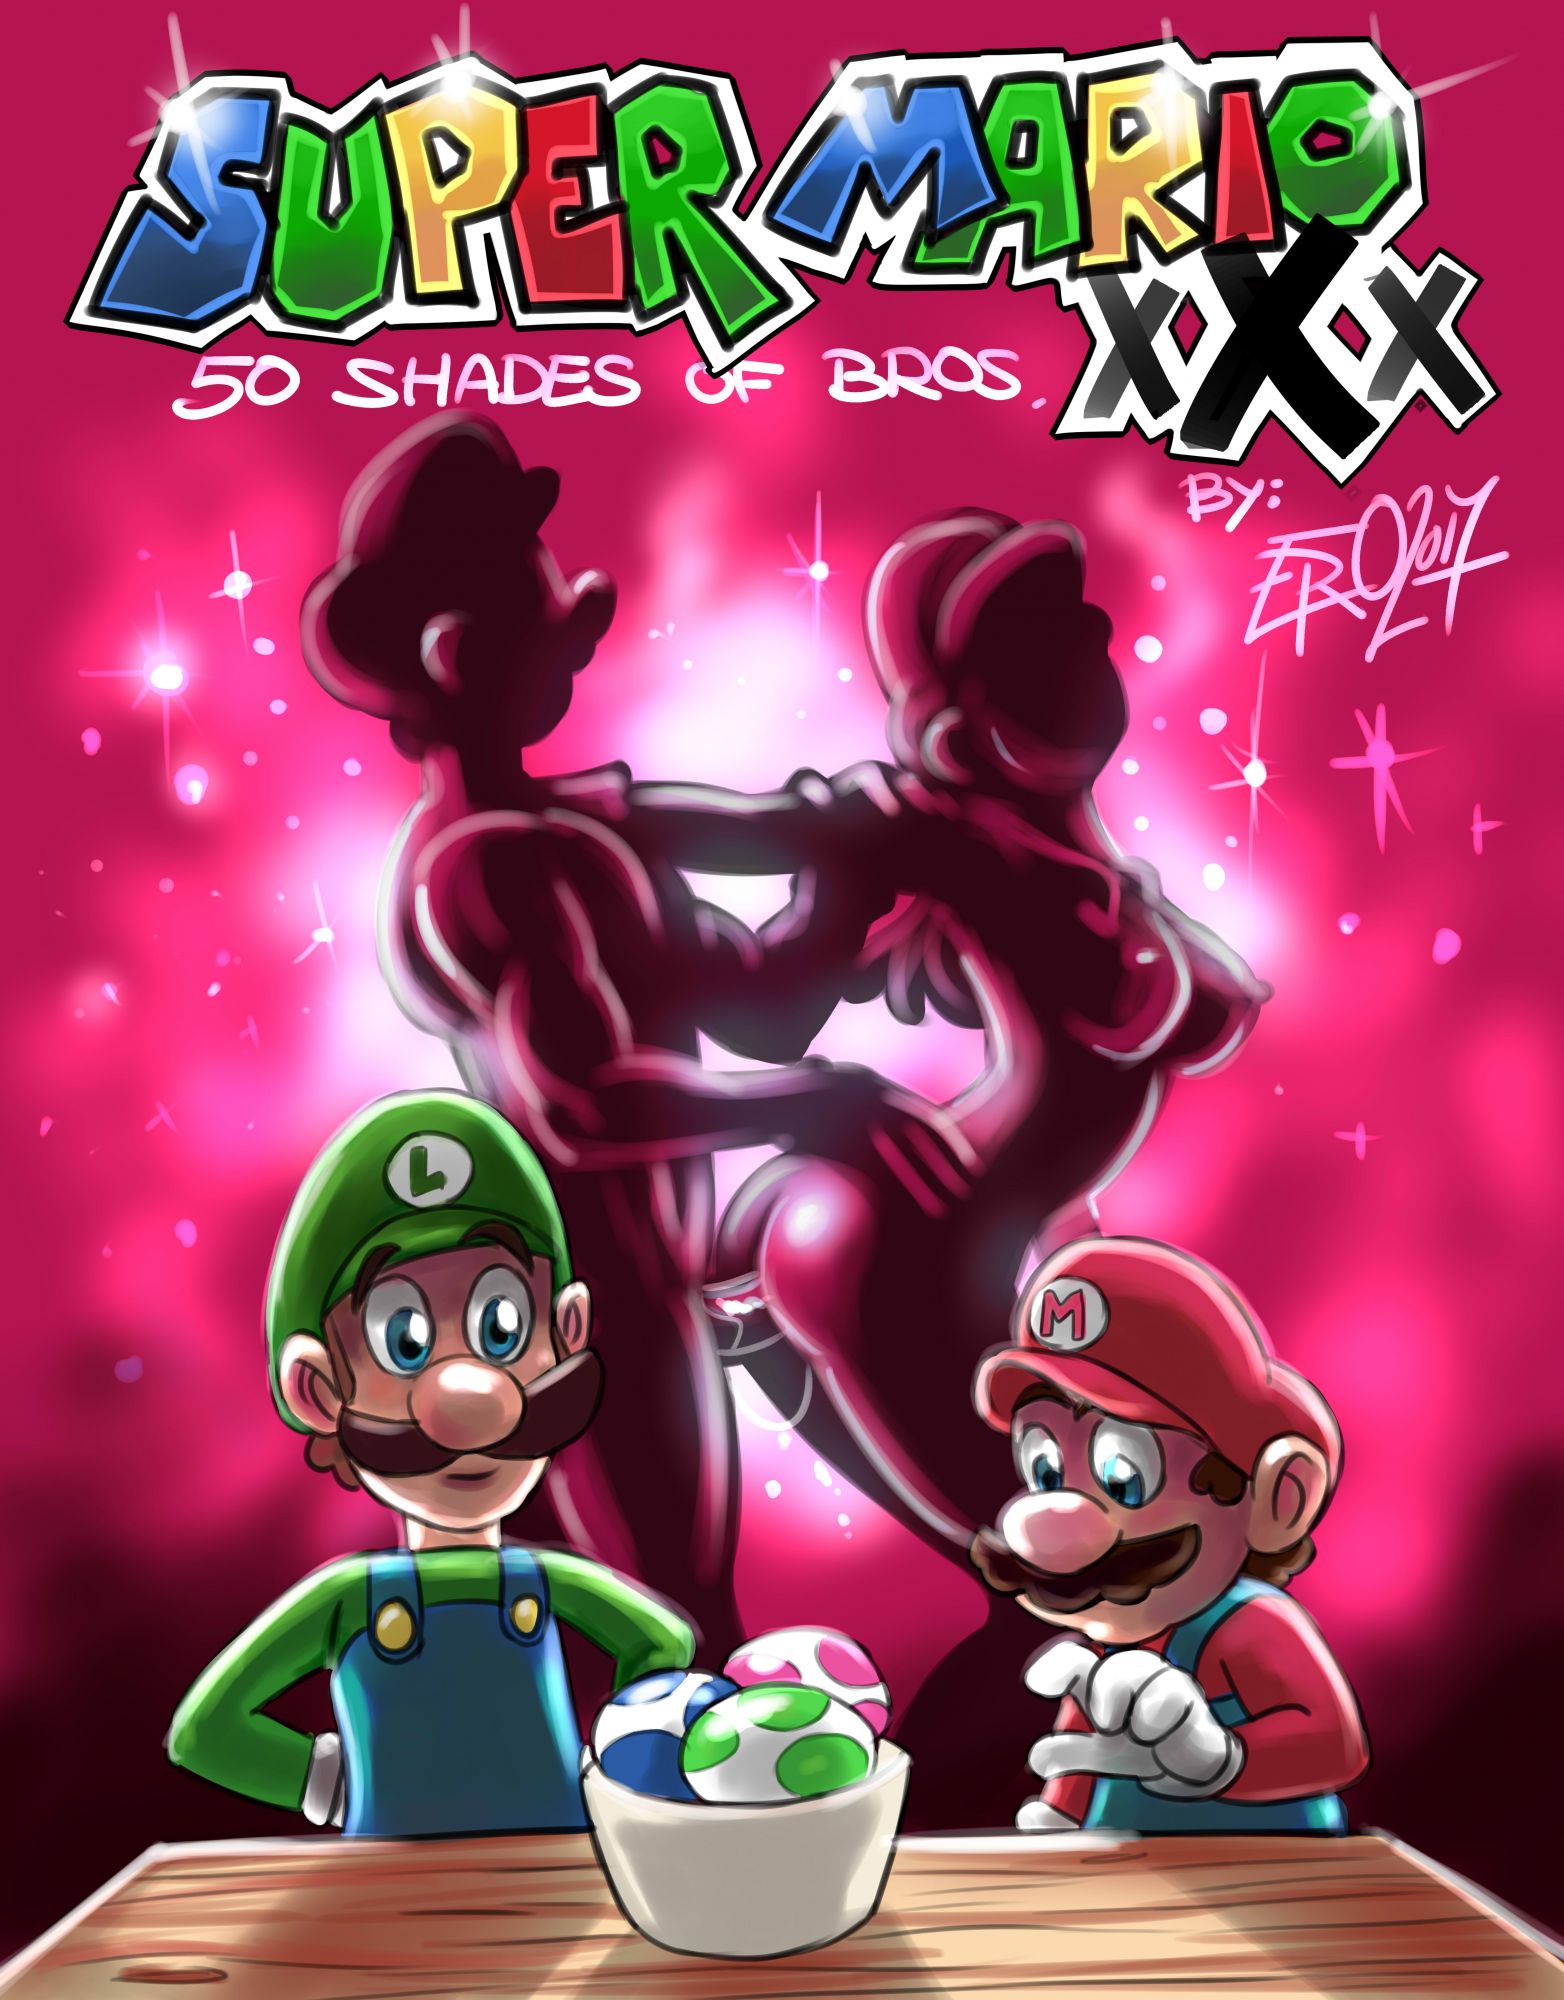 SureFap xxx porno Super Mario Bros - [Psicoero] - 50 Shades of Bros